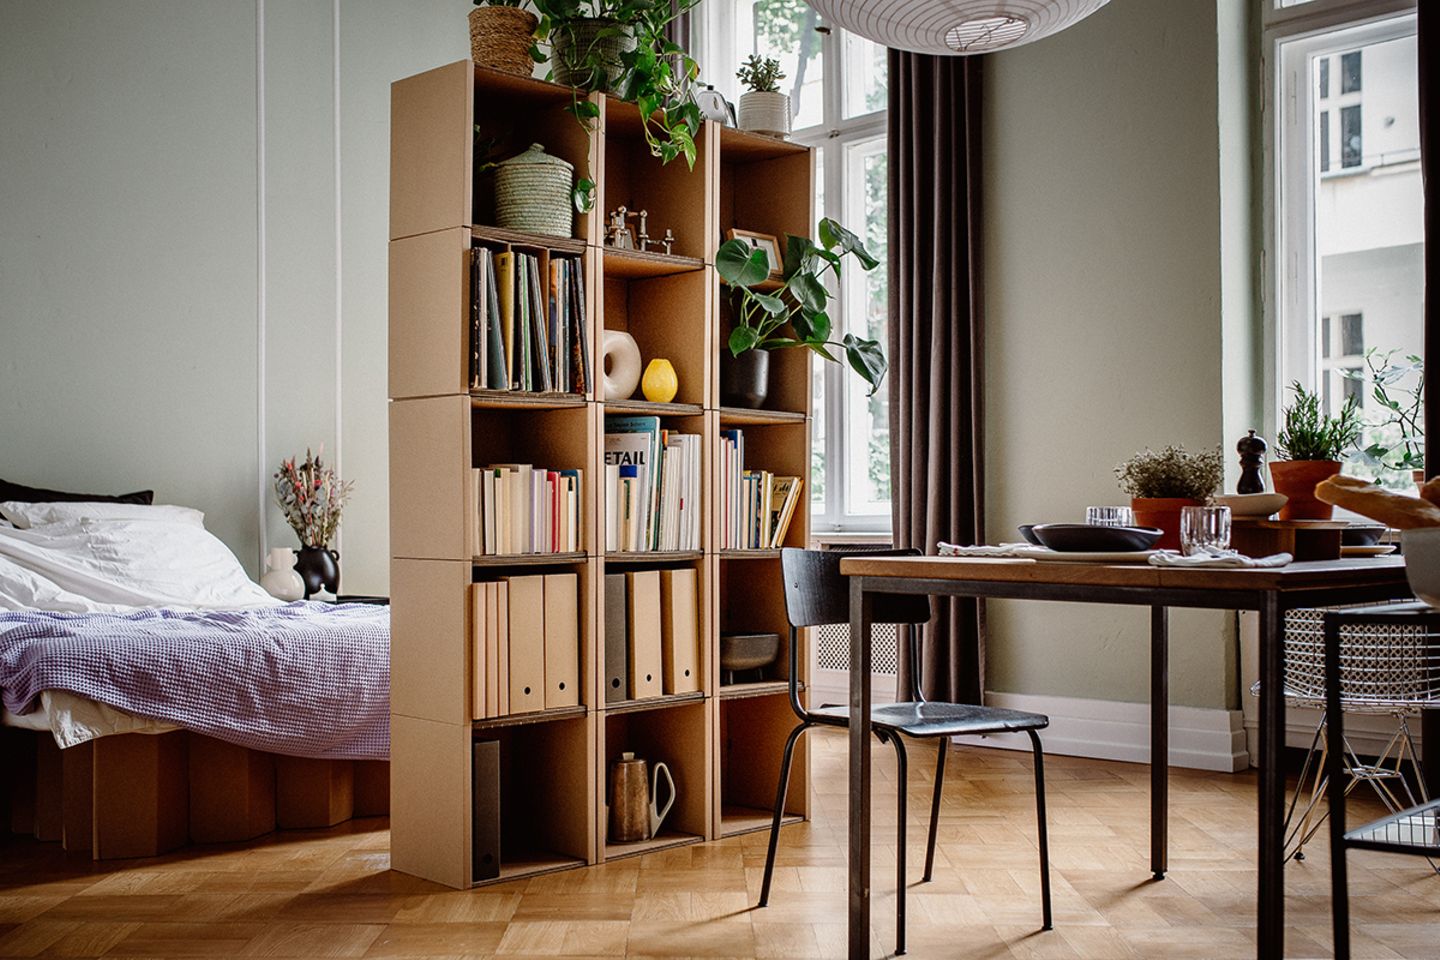 Bücherregal aus Wellpappe als Raumteiler zwischen Bett und Esstisch